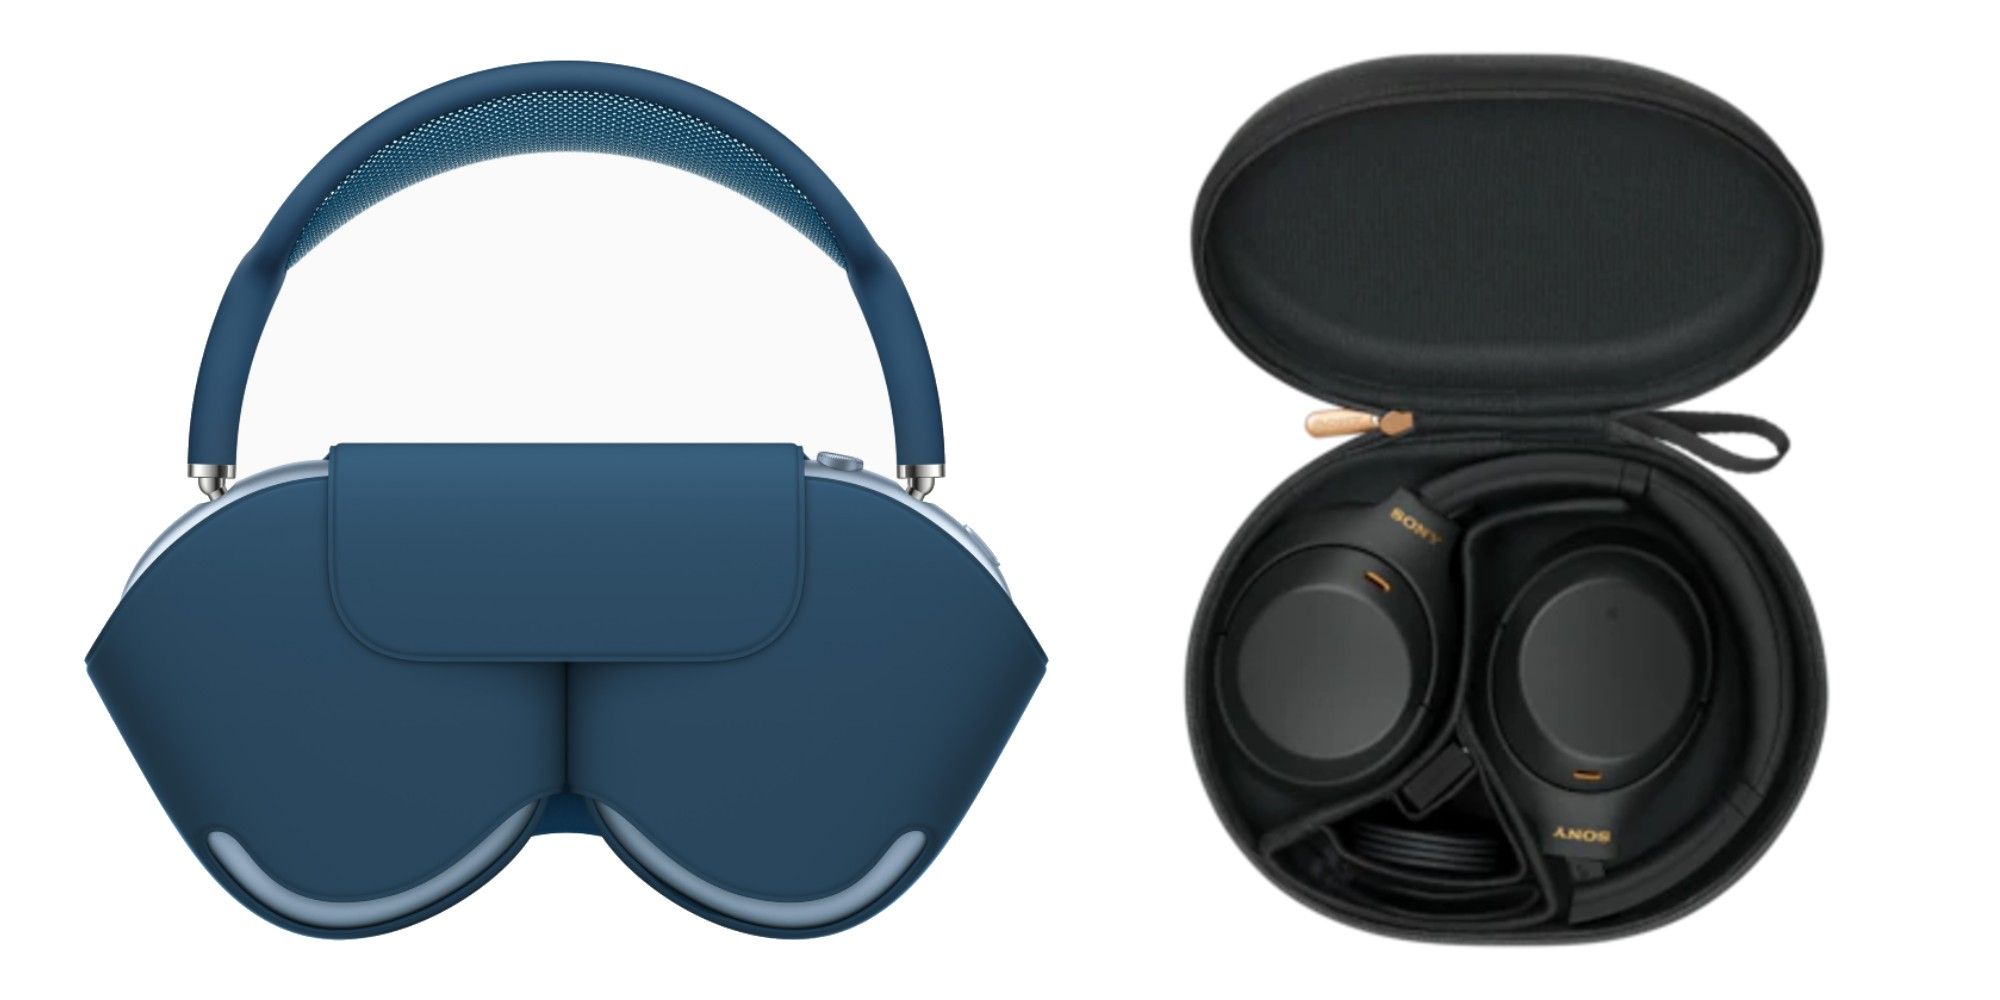 Apple vs. Sony headphone cases